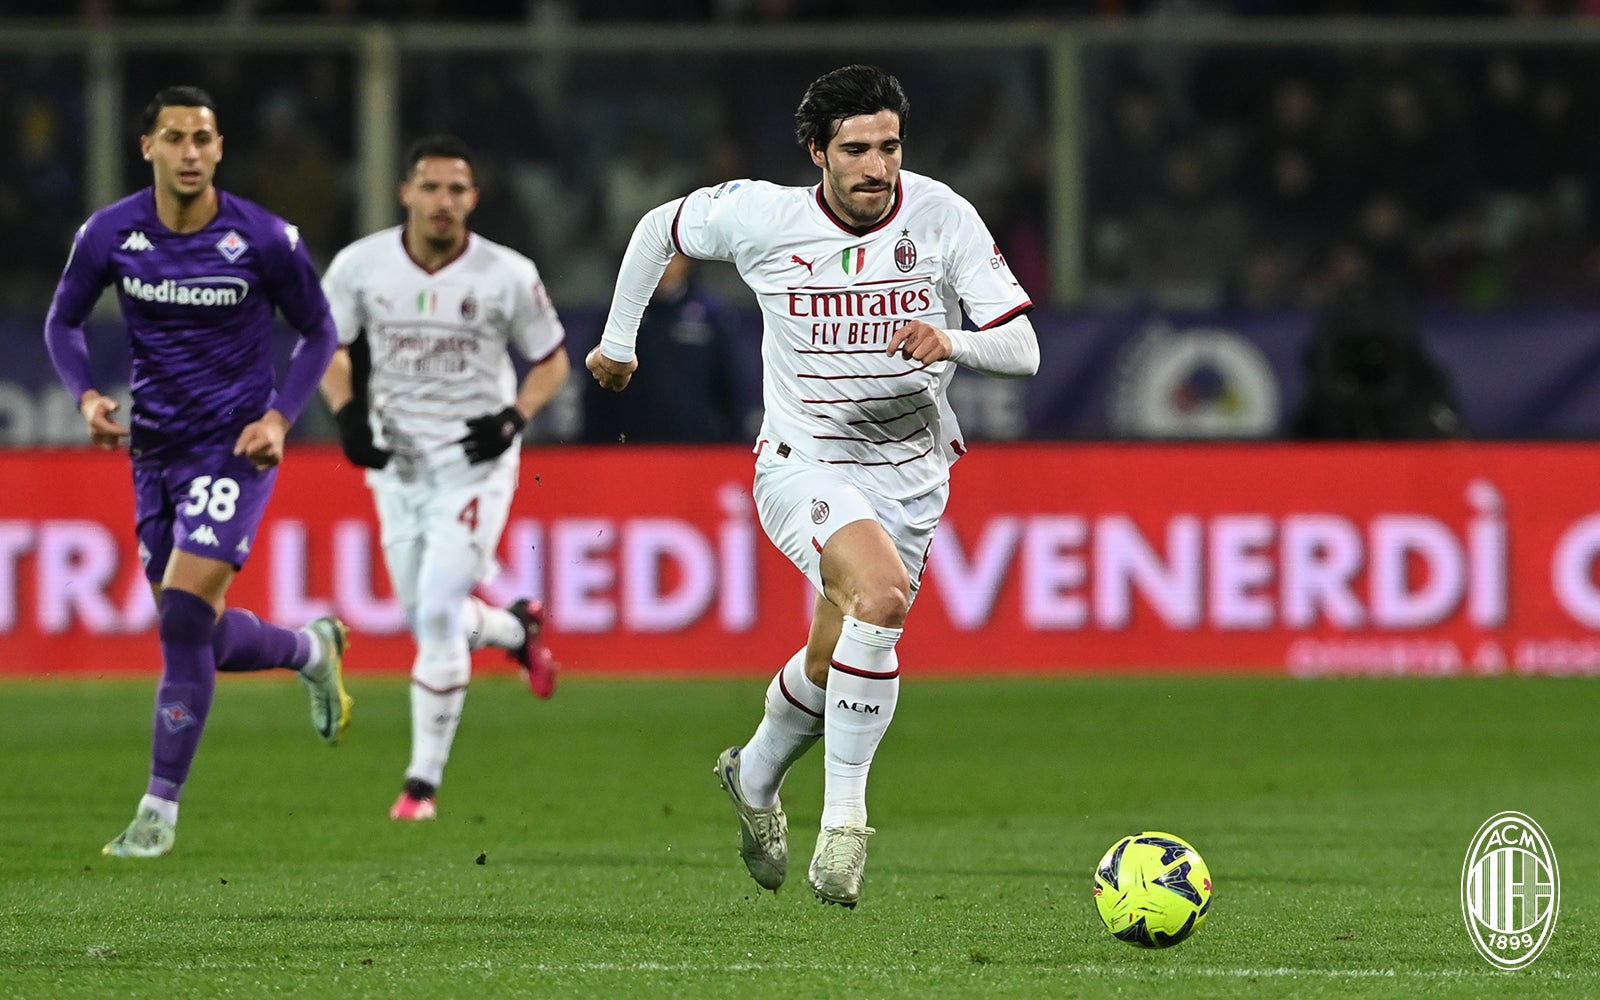 AC Milan 2-1 Fiorentina, Serie A TIM 2022/2023: the match report